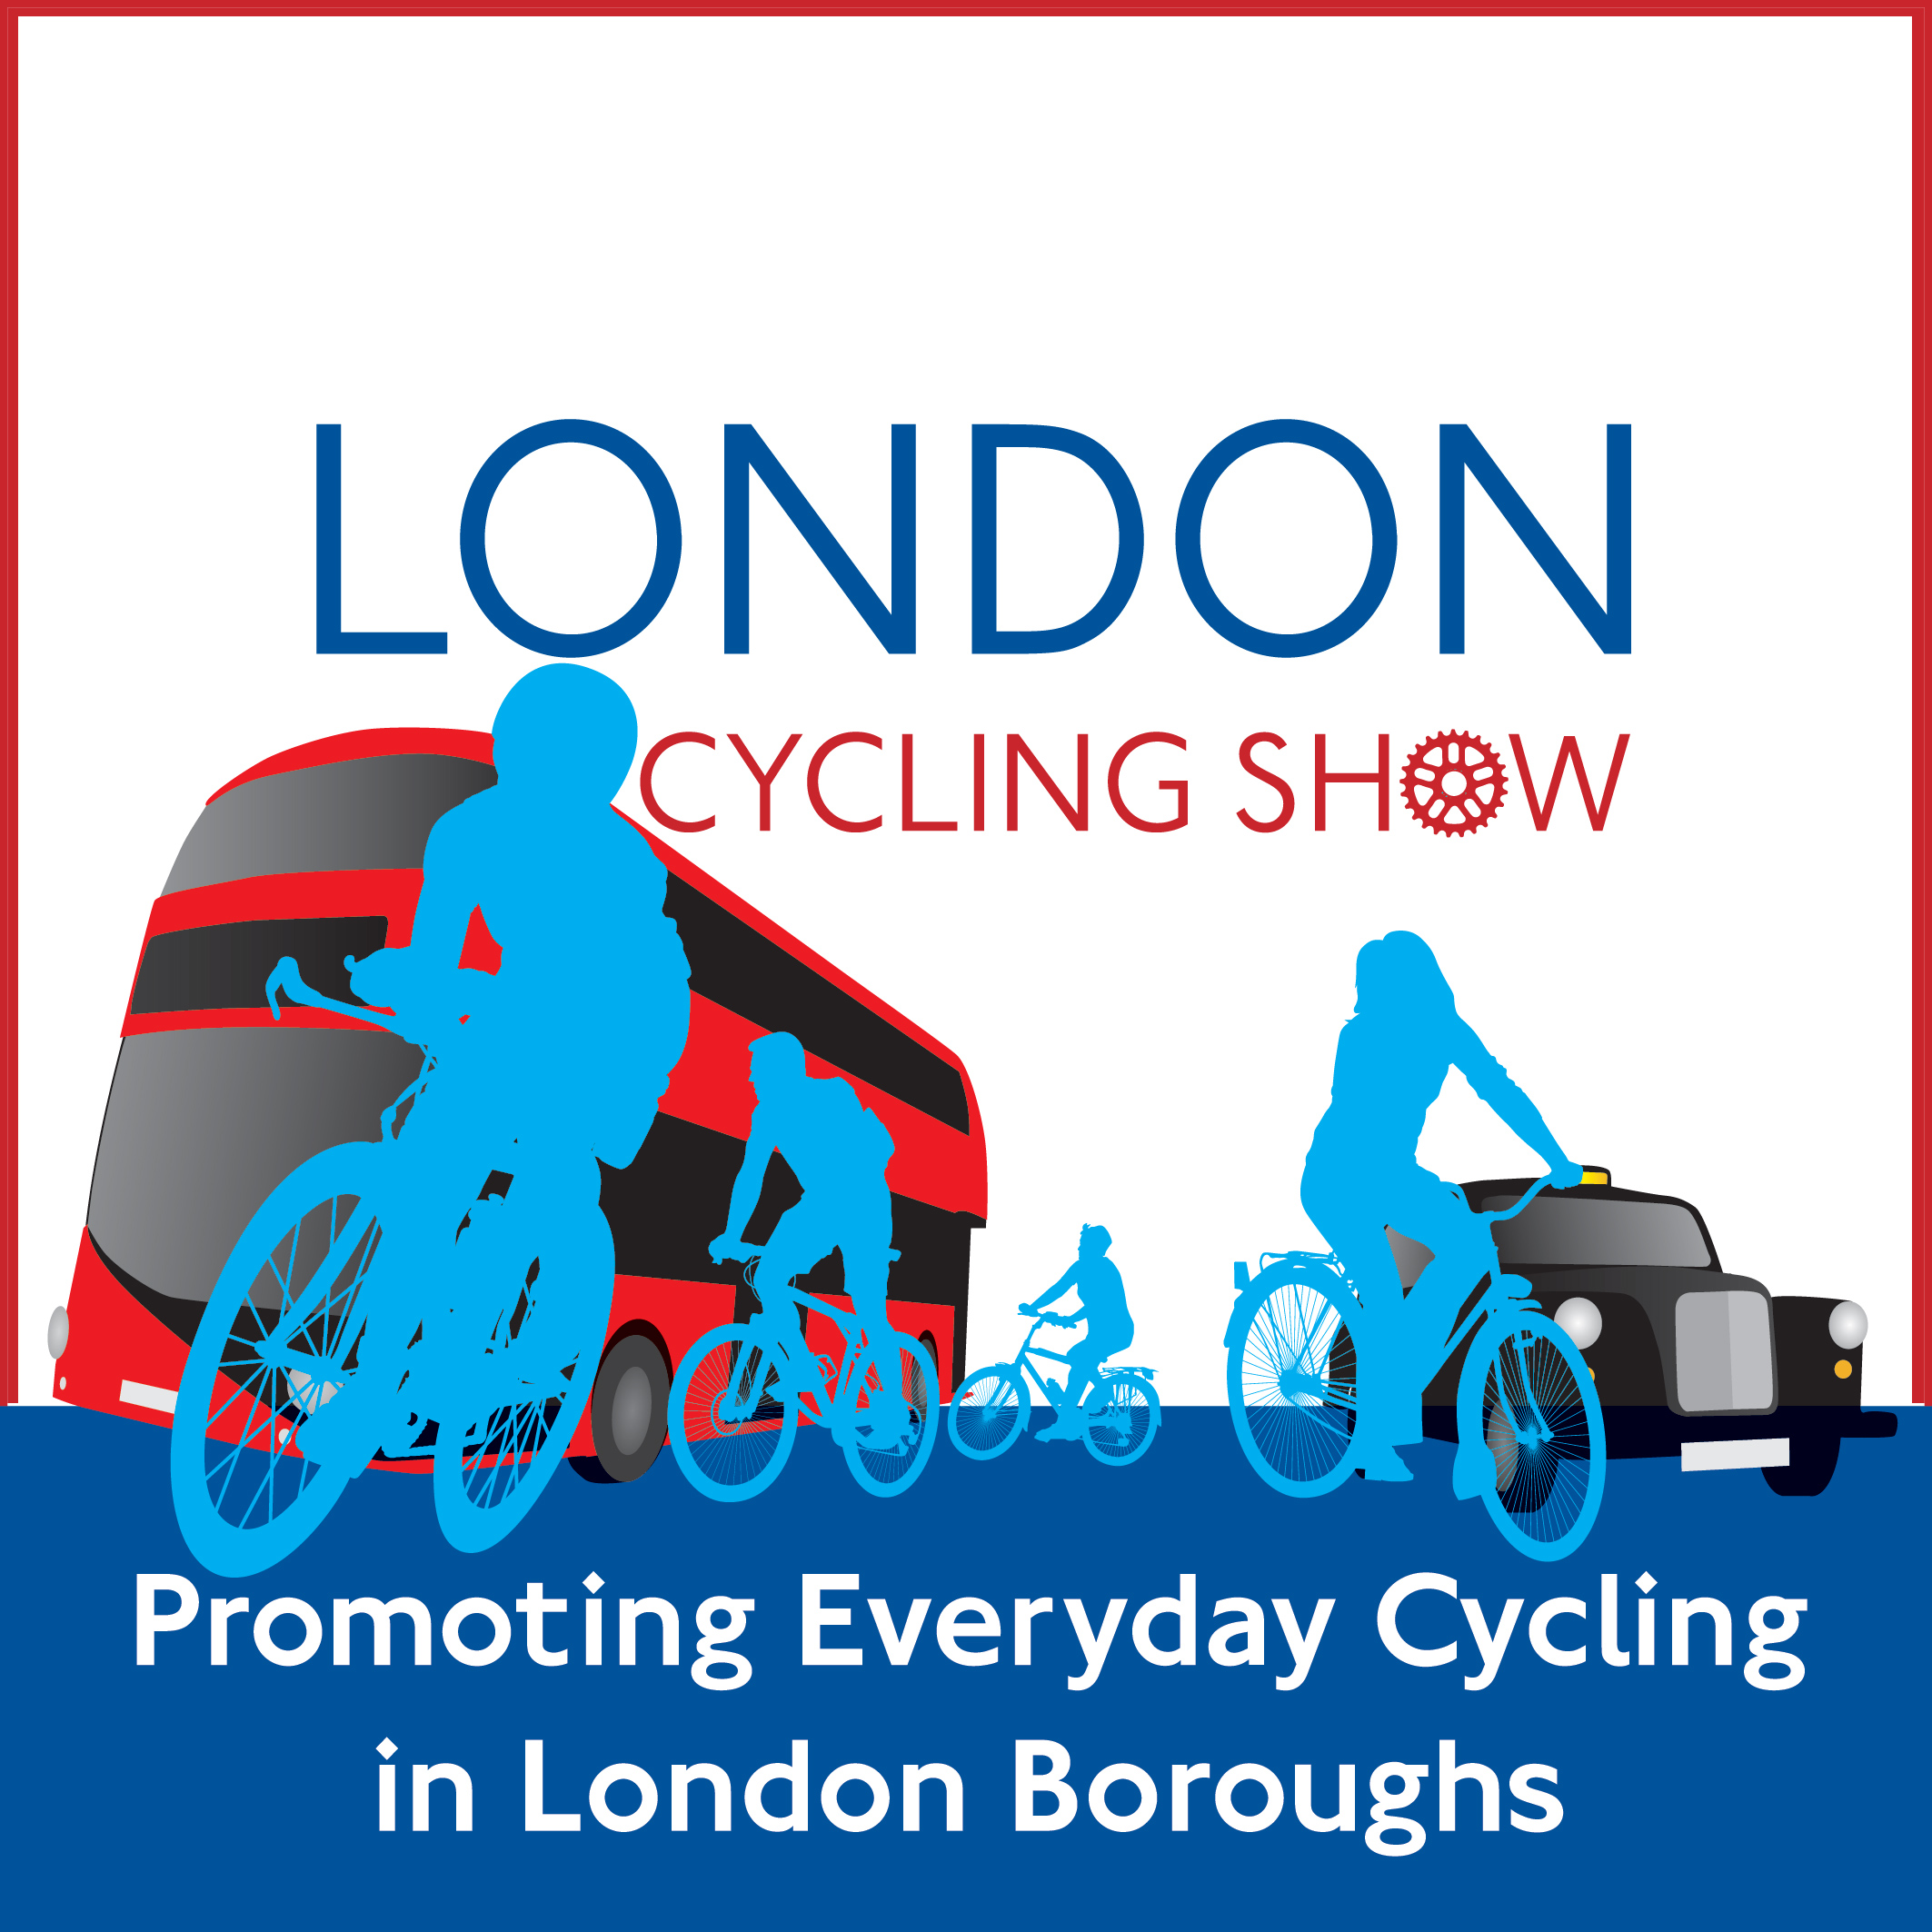 London Cycling Show 2014